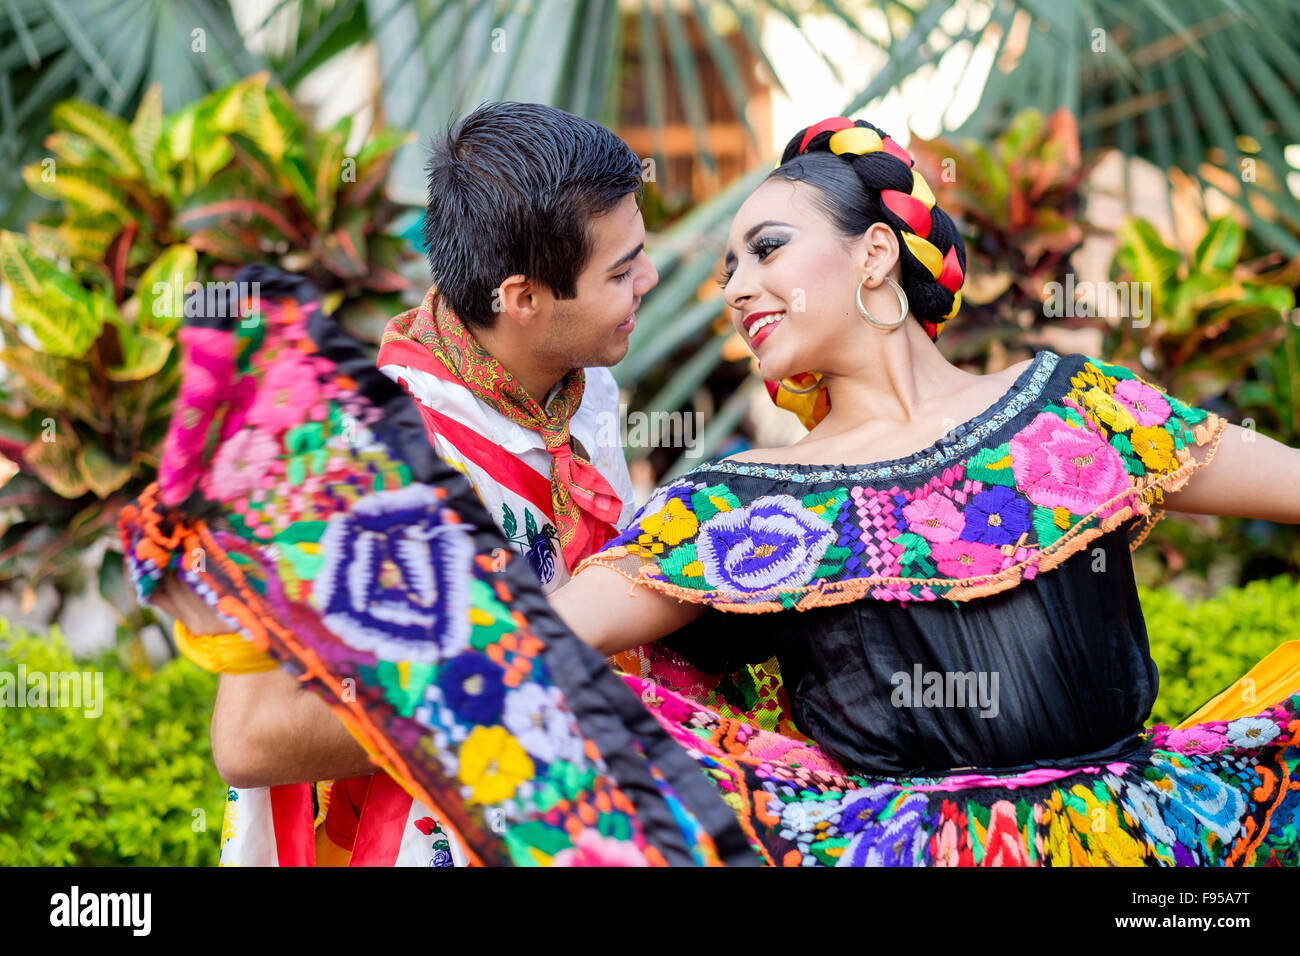 Junger Mann und Frau in ihren traditionellen Kostümen tanzen. Puerto Vallarta, Jalisco, Mexiko. Xiutla Tänzer - eine folkloristische Mex Stockfoto